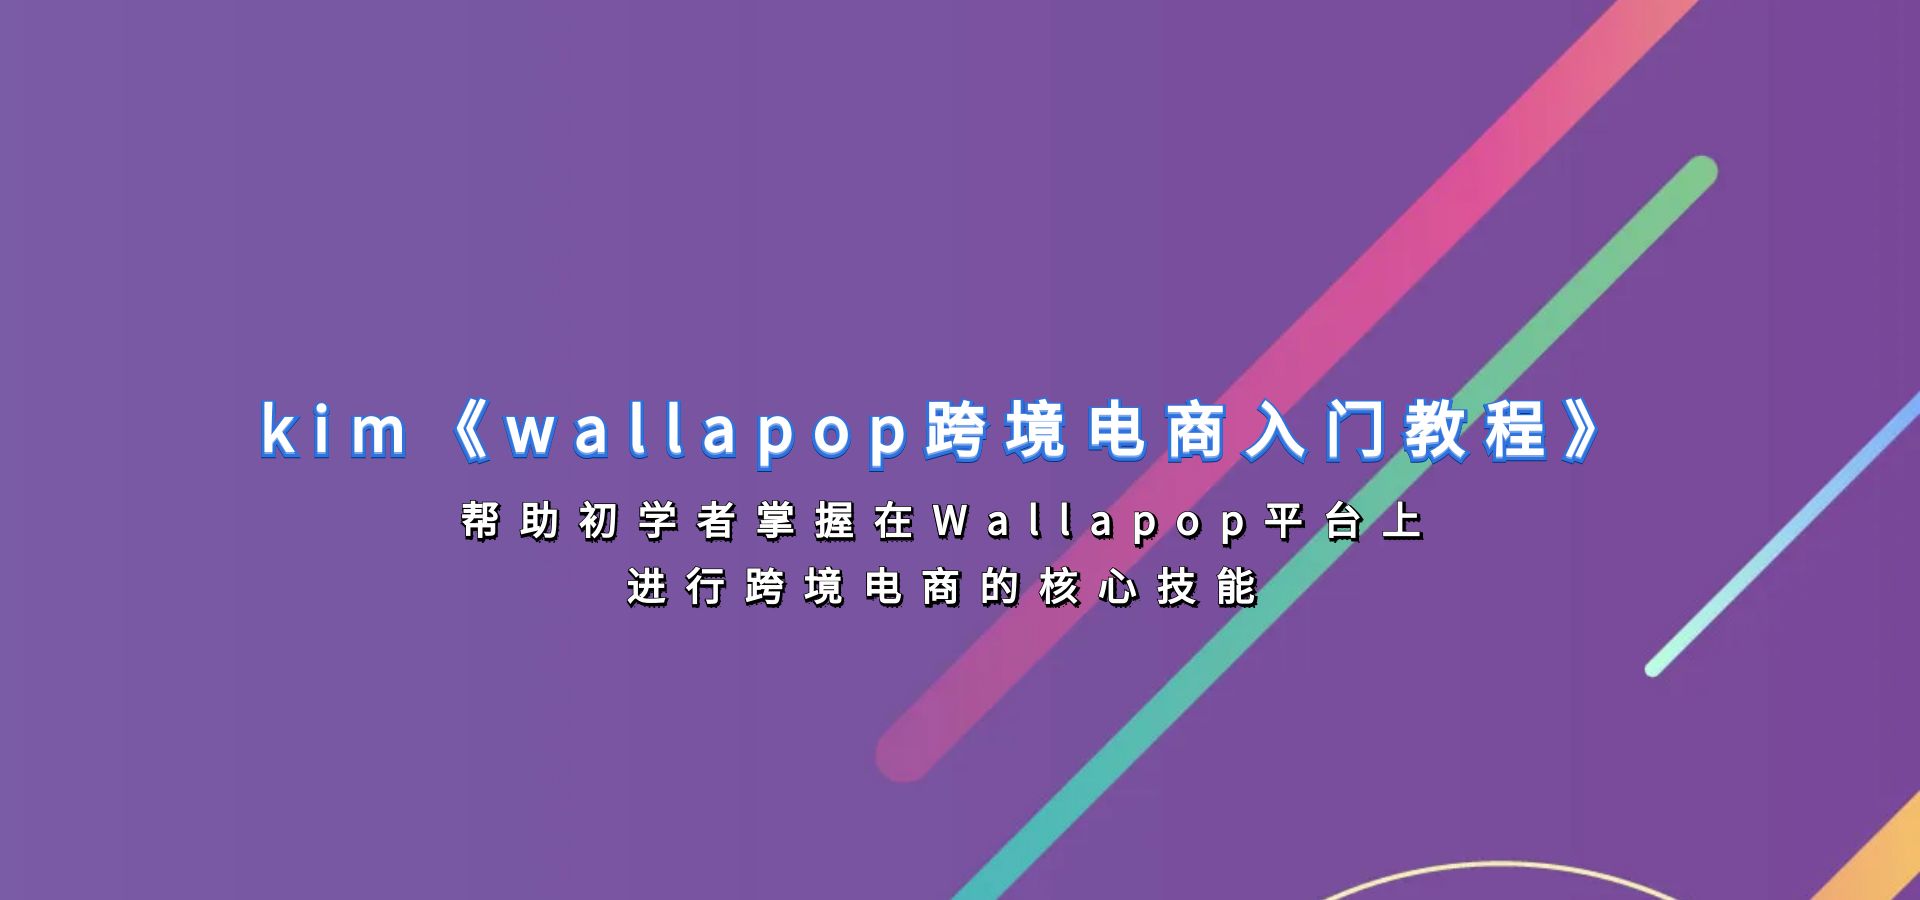 kim《wallapop跨境电商入门教程》